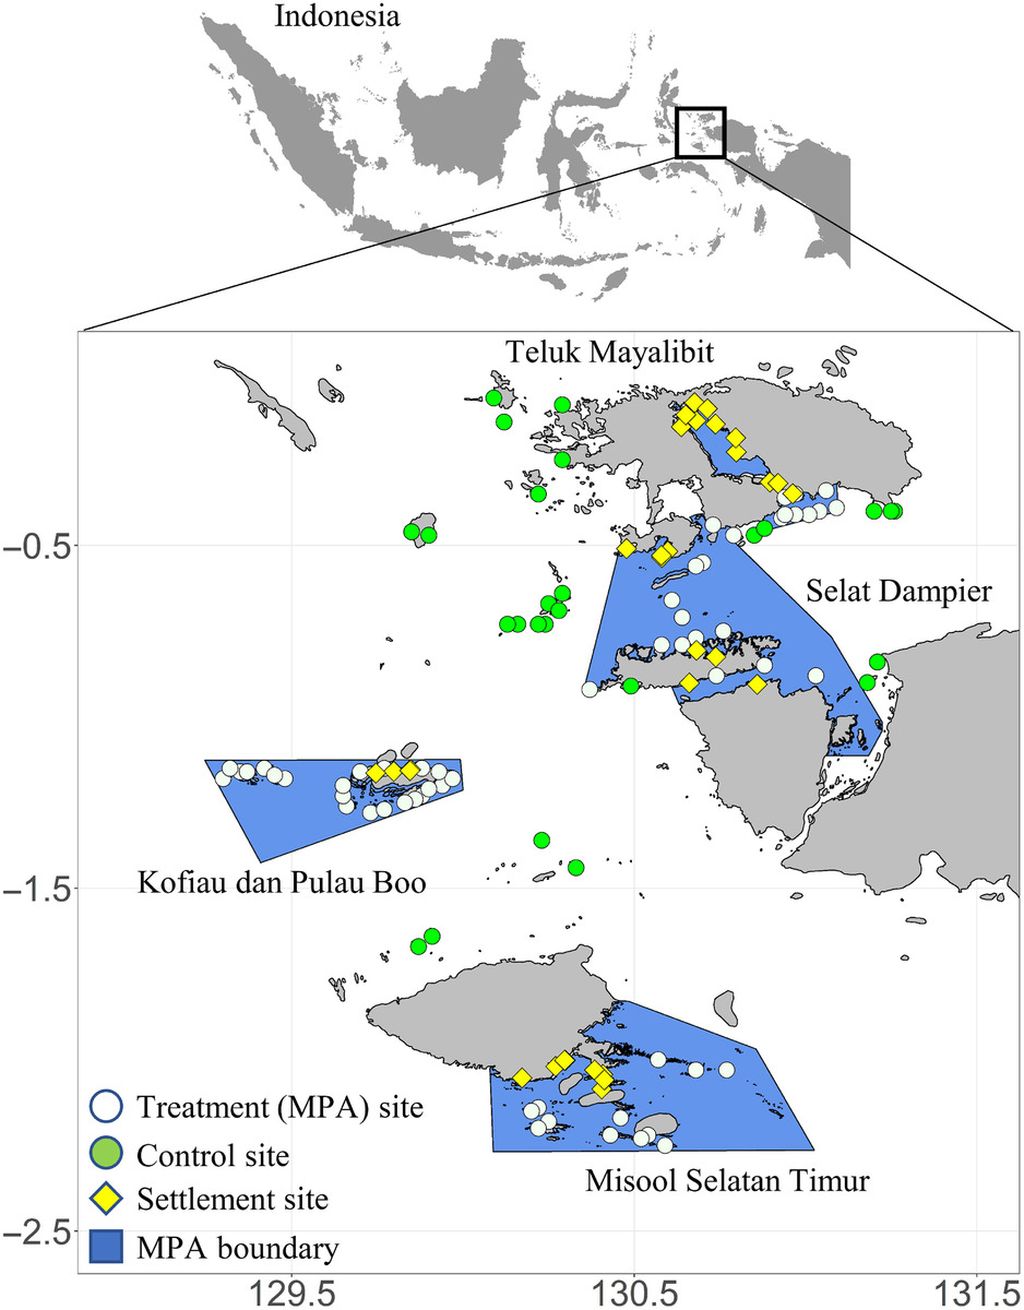 Lokasi situs ekologi dan permukiman di sepanjang bentang laut Kepala Burung. Lokasi perlakuan ekologi (n = 59) diwakili oleh lingkaran putih, lokasi kontrol ekologi (n = 28) diwakili oleh lingkaran hijau, dan lokasi permukiman (n = 32) diwakili oleh intan kuning. Kawasan konservasi laut dibatasi dengan warna biru. Sumber: Robert Y Fidler, dkk (<i>Science Advances</i>, 2022)